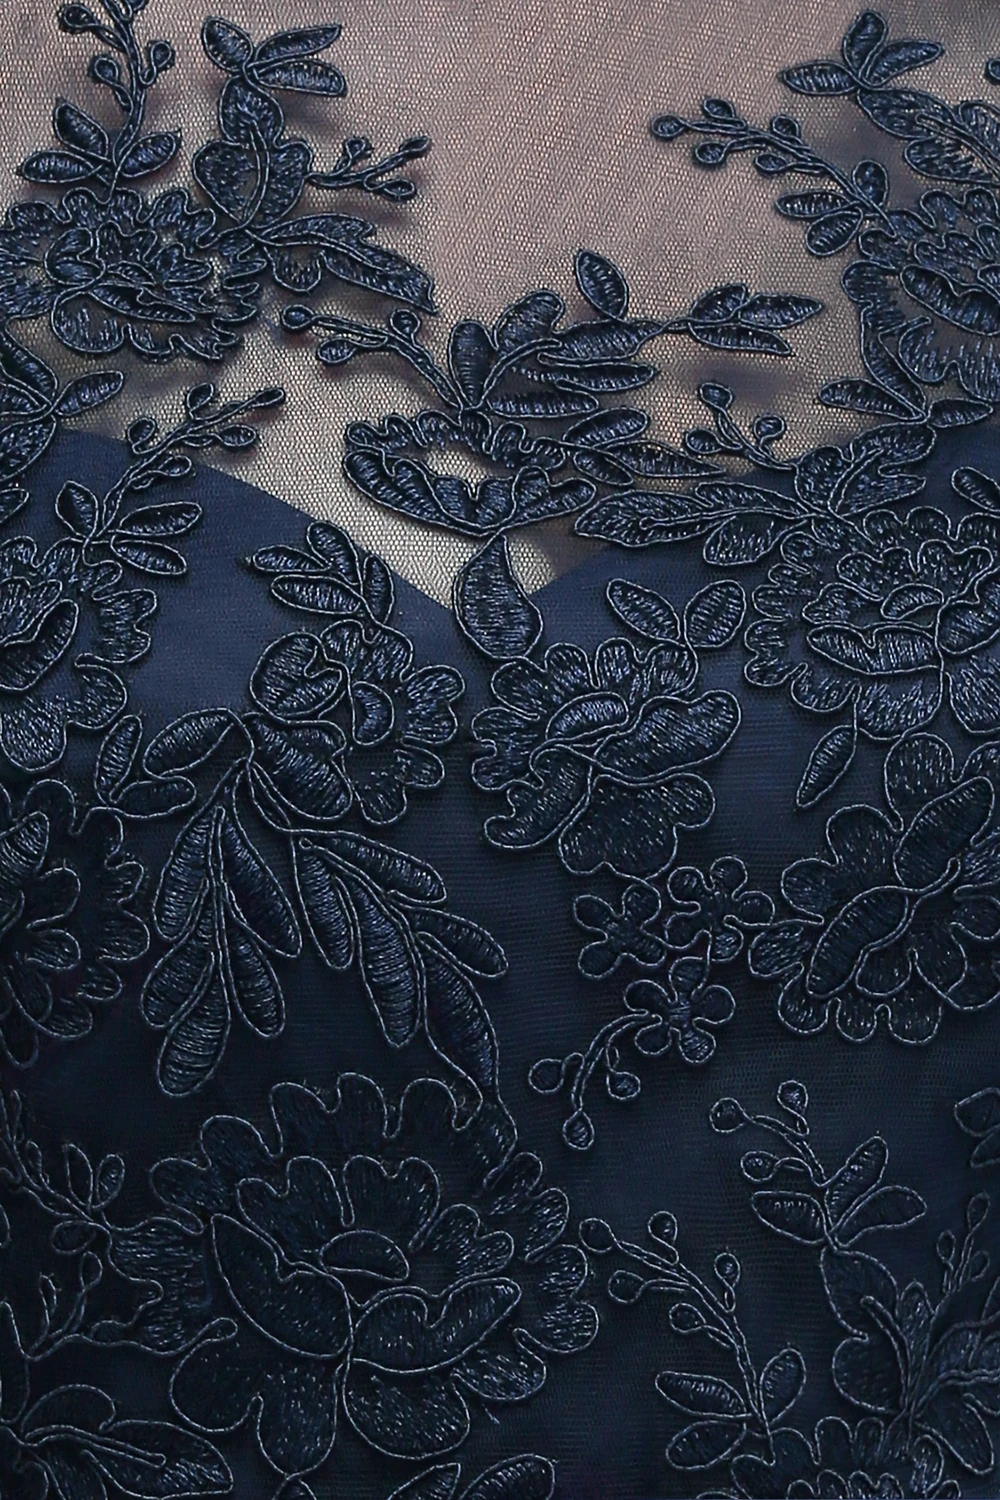 Vestidos de baile,, темно-синее платье трапециевидной формы для выпускного вечера, элегантное недорогое длинное платье с аппликацией, платье для выпускного вечера с рукавом